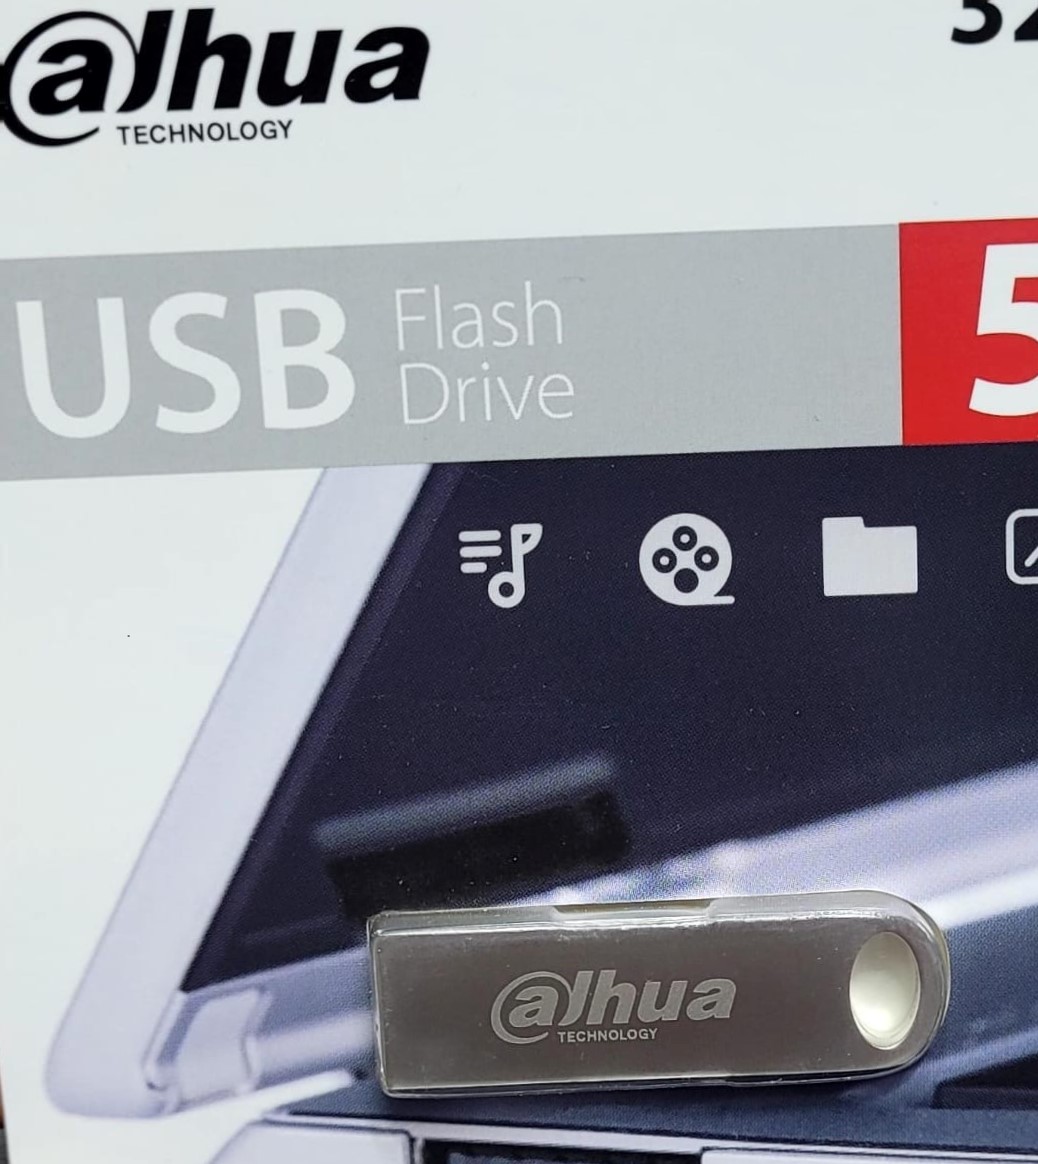 USB DAHUA 8GB FLASH DRIVE 2.0